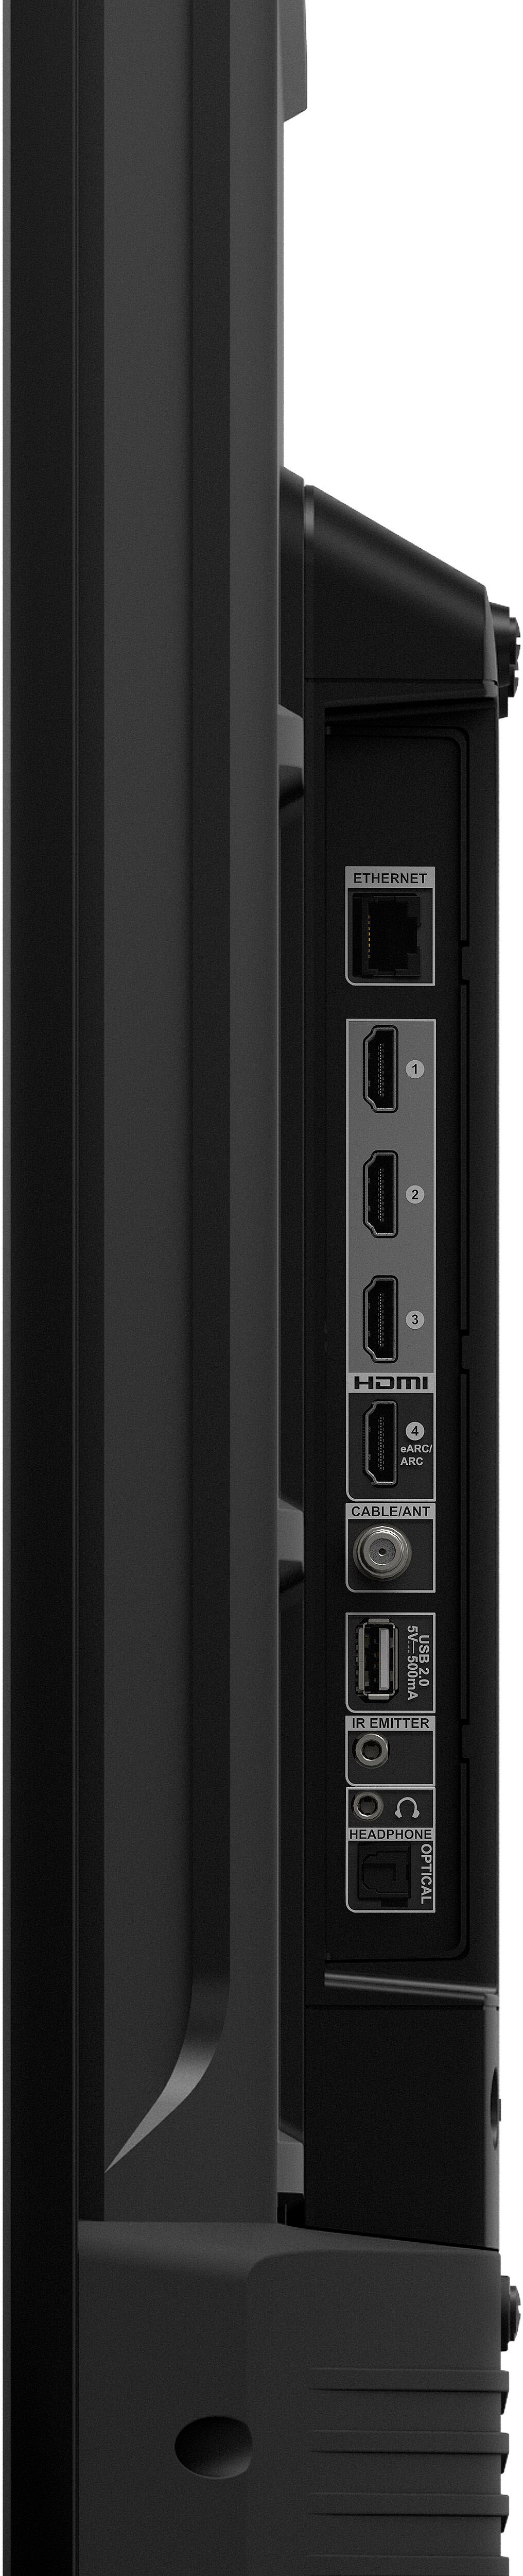 Fire TV Stick 4K - Black, 8 GB - Kroger